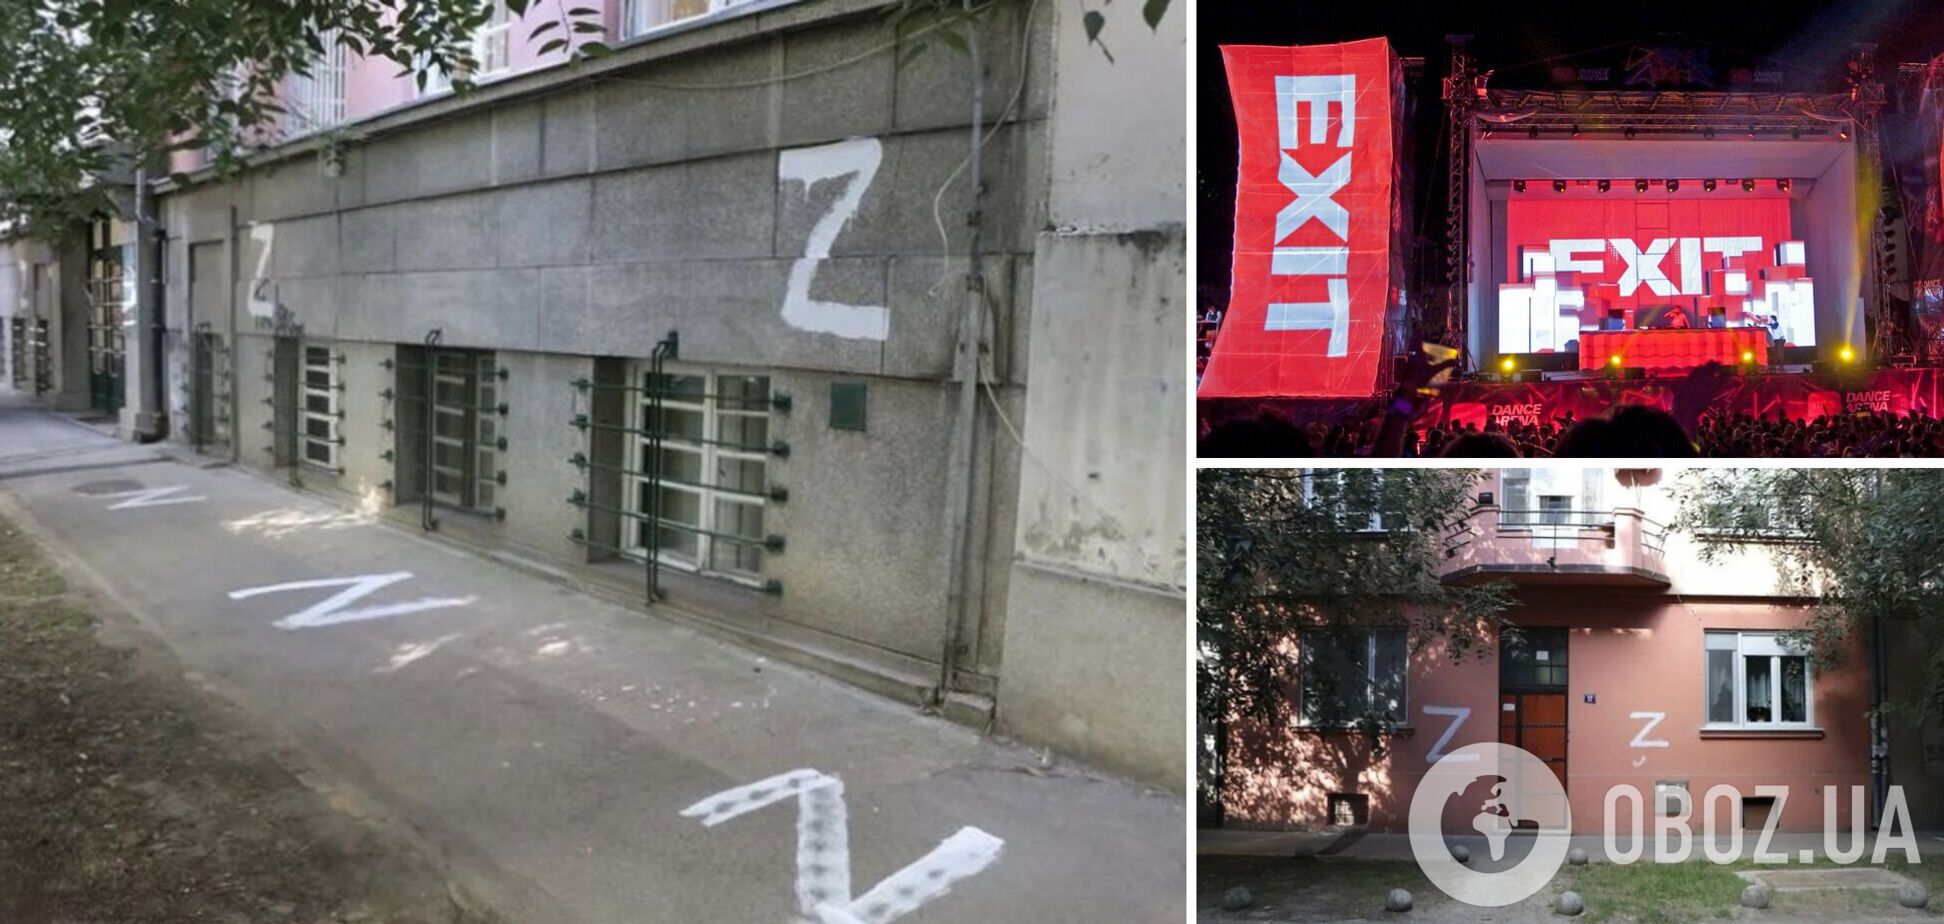 Несколько тысяч надписей с буквой Z. В Сербии в канун международного фестиваля Exit появились символы российской агрессии